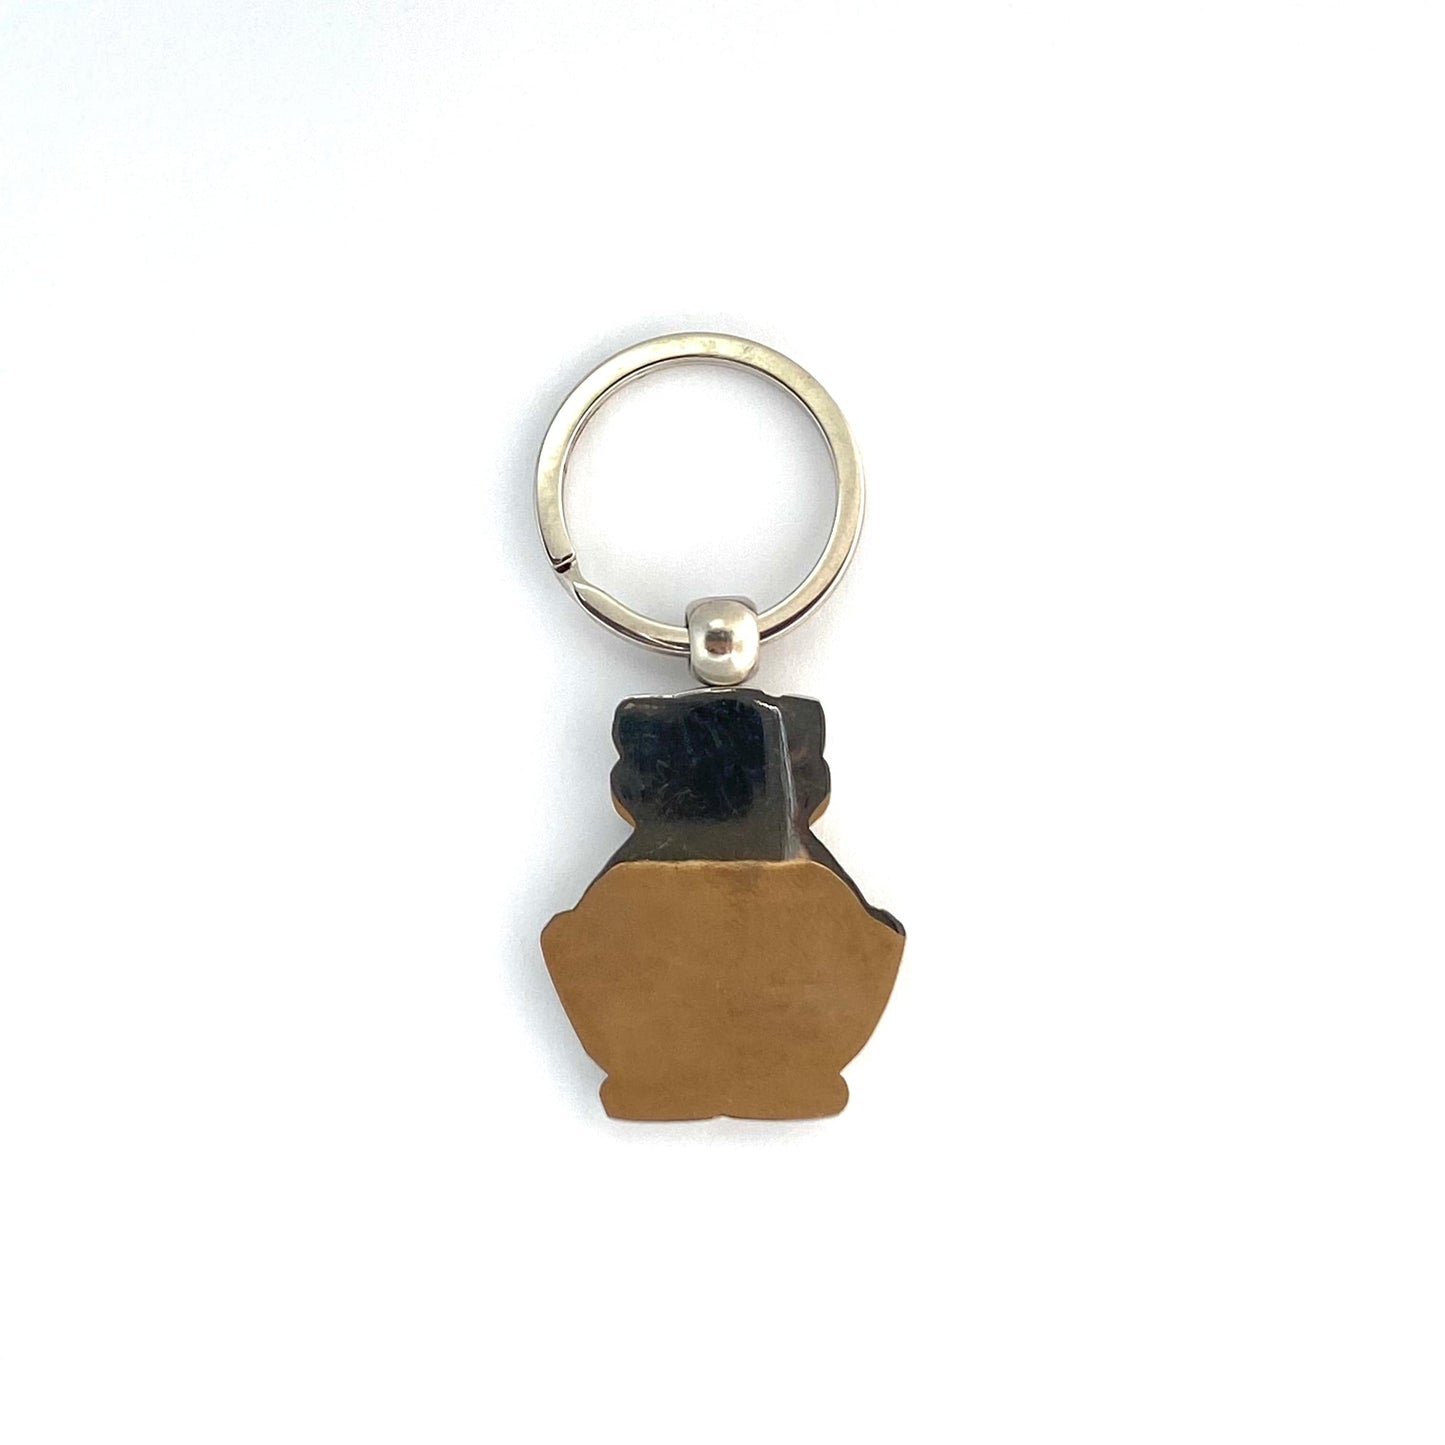 “Canada” Maple Leaf Flags Silvertone Frog Souvenir Keychain Key Ring Metal Charm